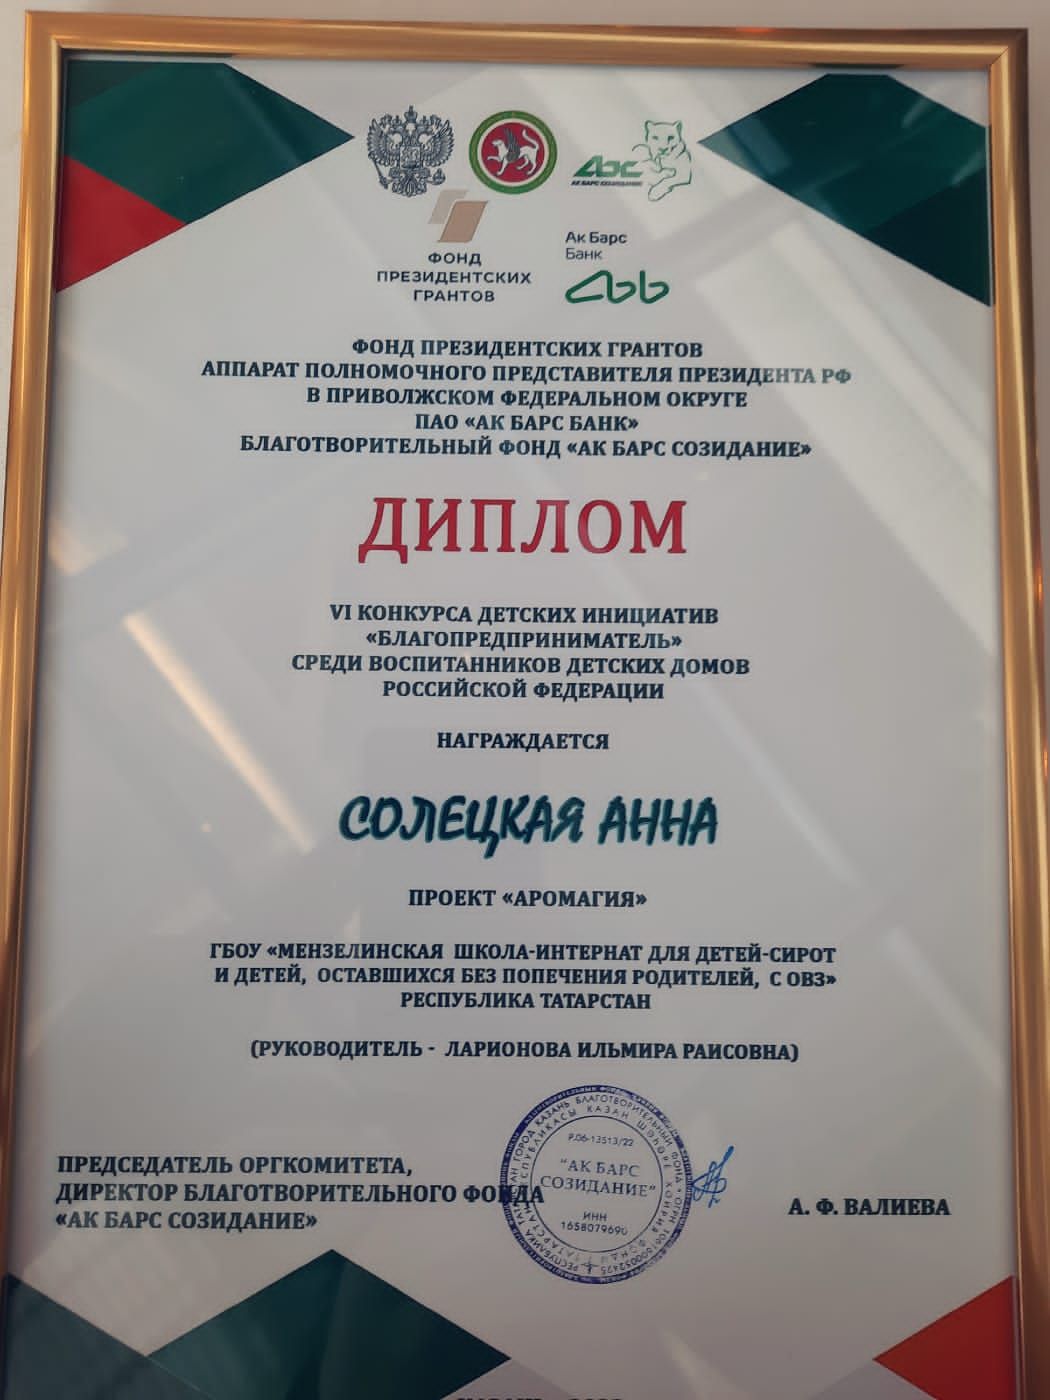 Анна Солецкая стала дипломантом VI конкурса детских инициатив «Благопредприниматель», среди воспитанников детских домов Российской Федерации